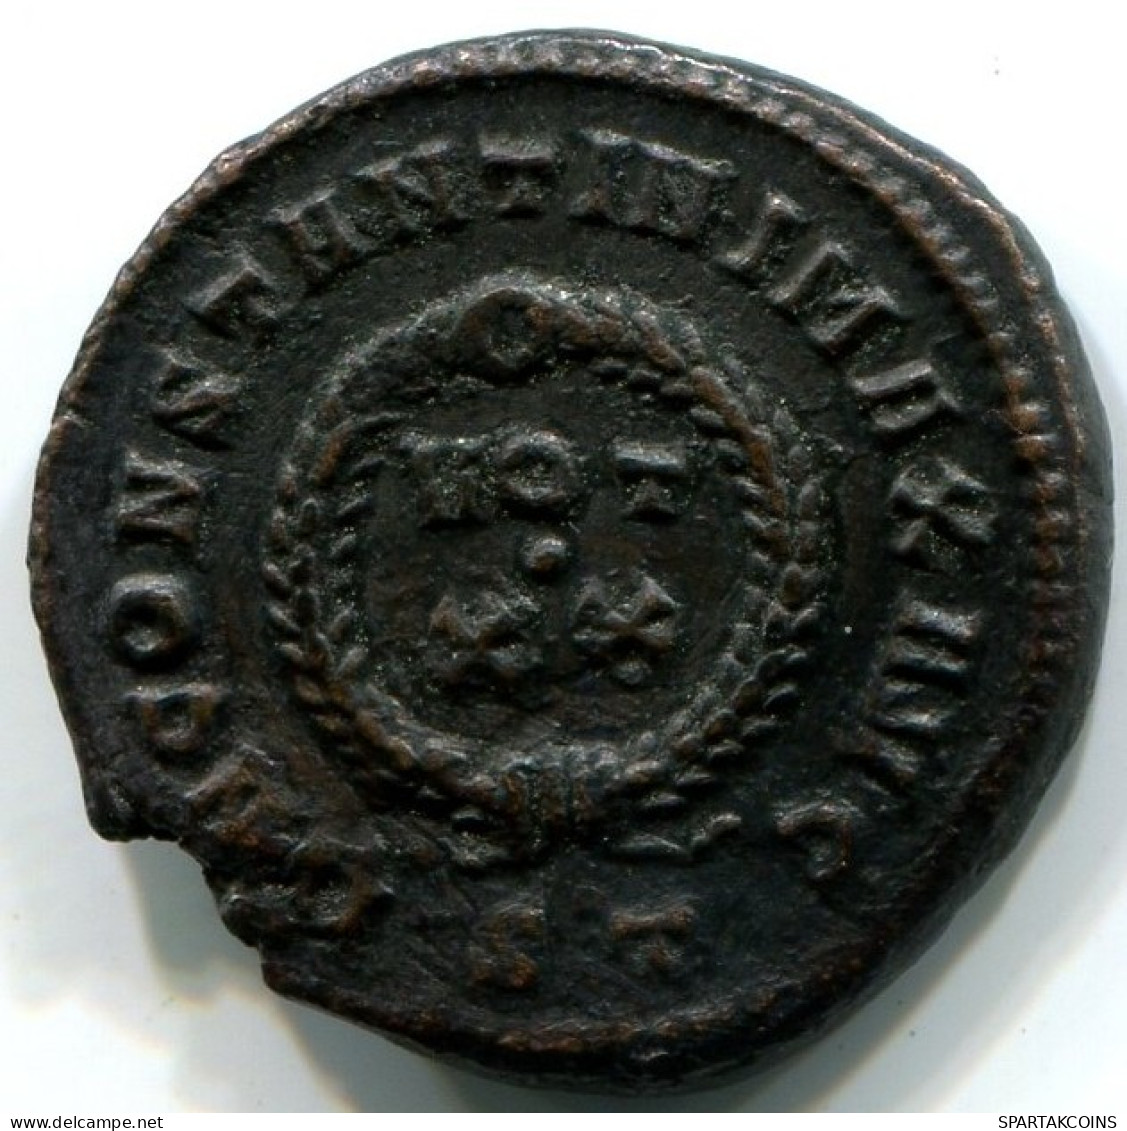 CONSTANTINE I Ticinum Mint ST AD 320-321 D N CONSTANTINI MAX AVG #ANC12447.16.E.A - L'Empire Chrétien (307 à 363)